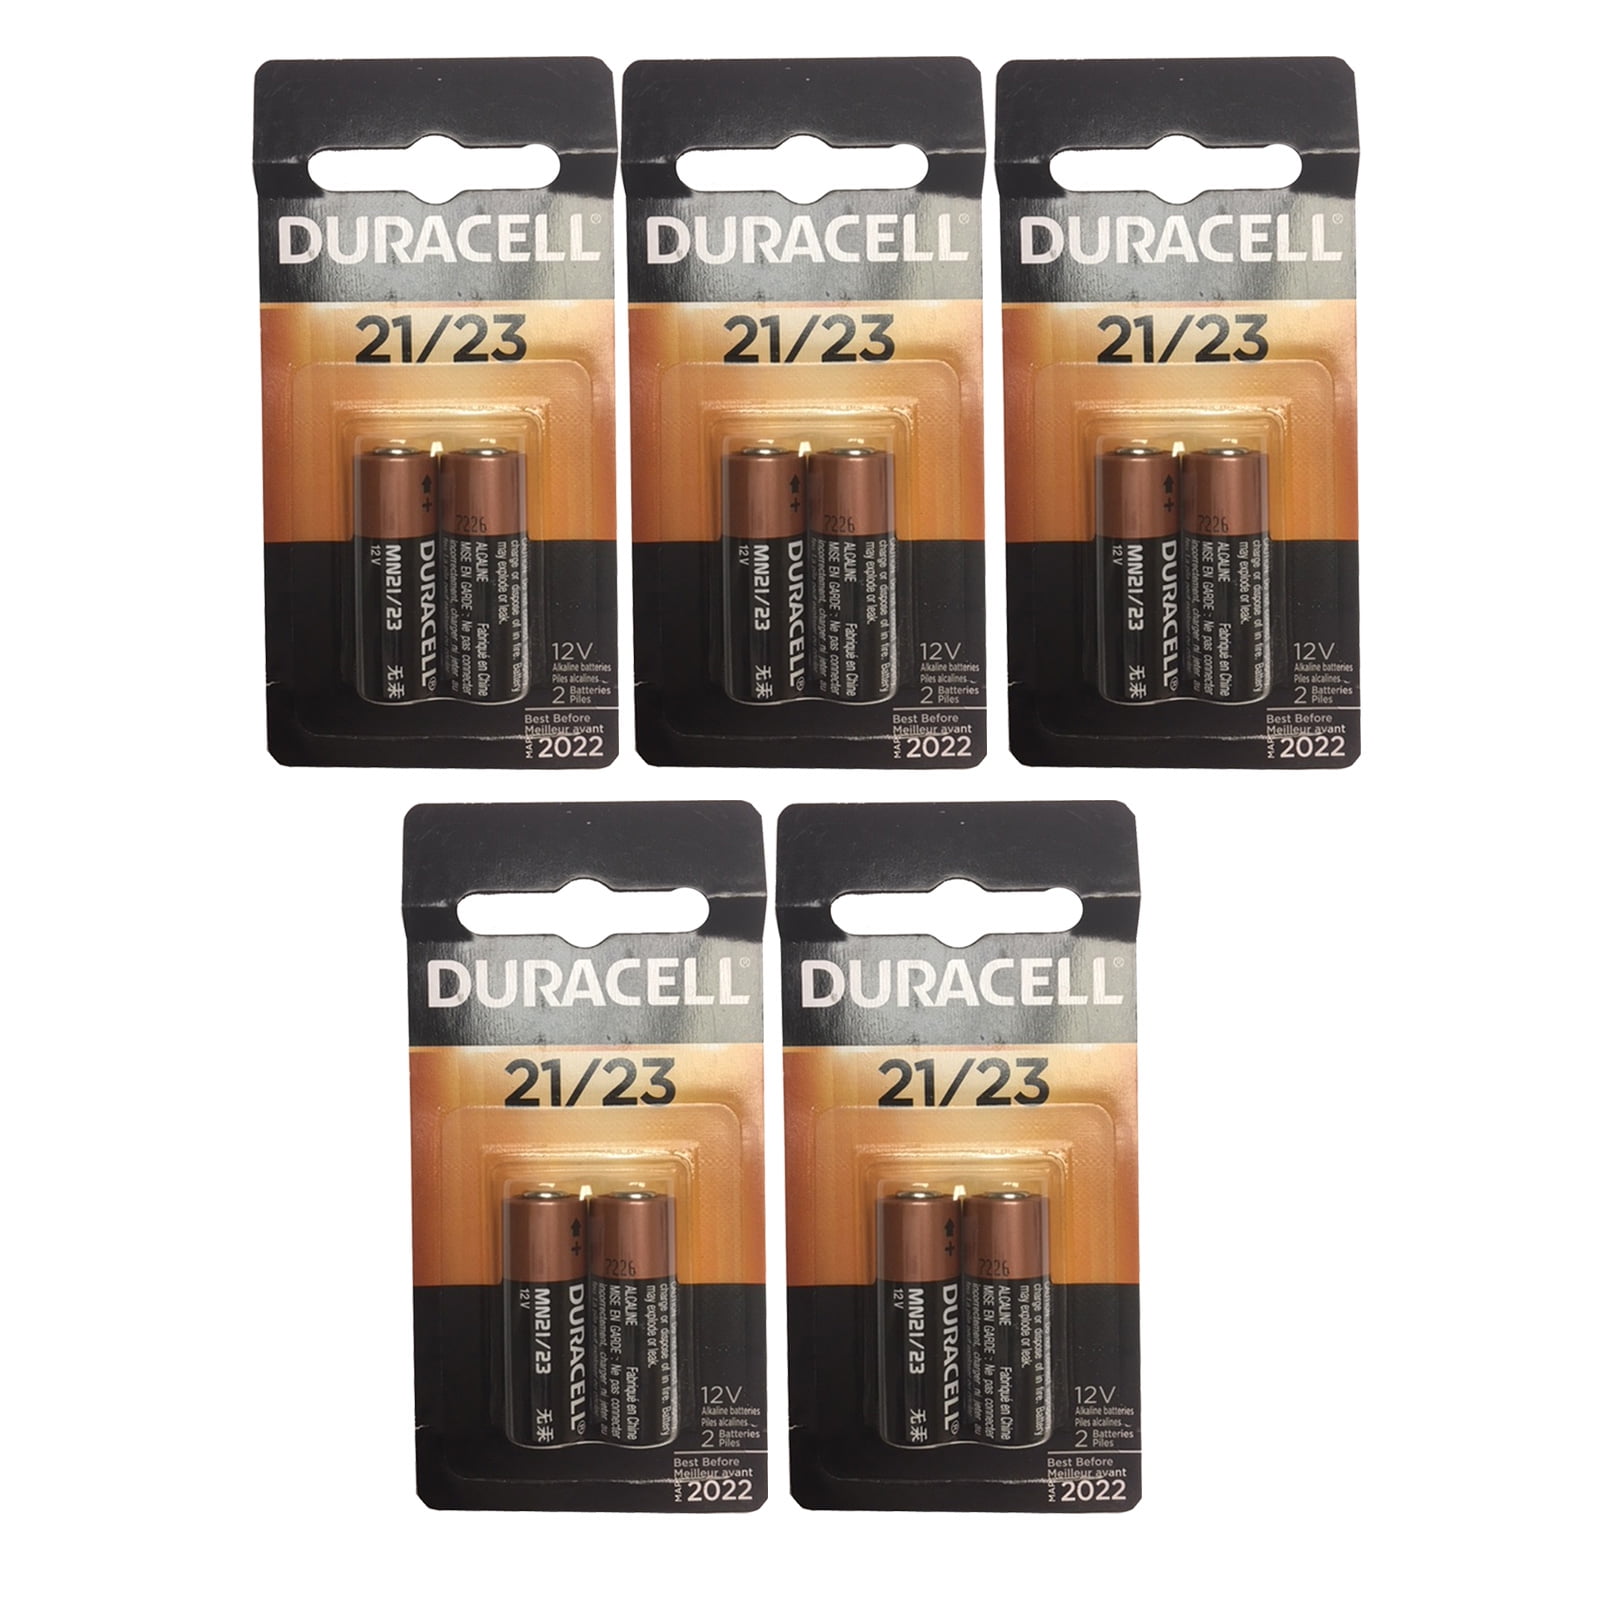 Duracell MN21 12v Alkaline Battery - pack of 2